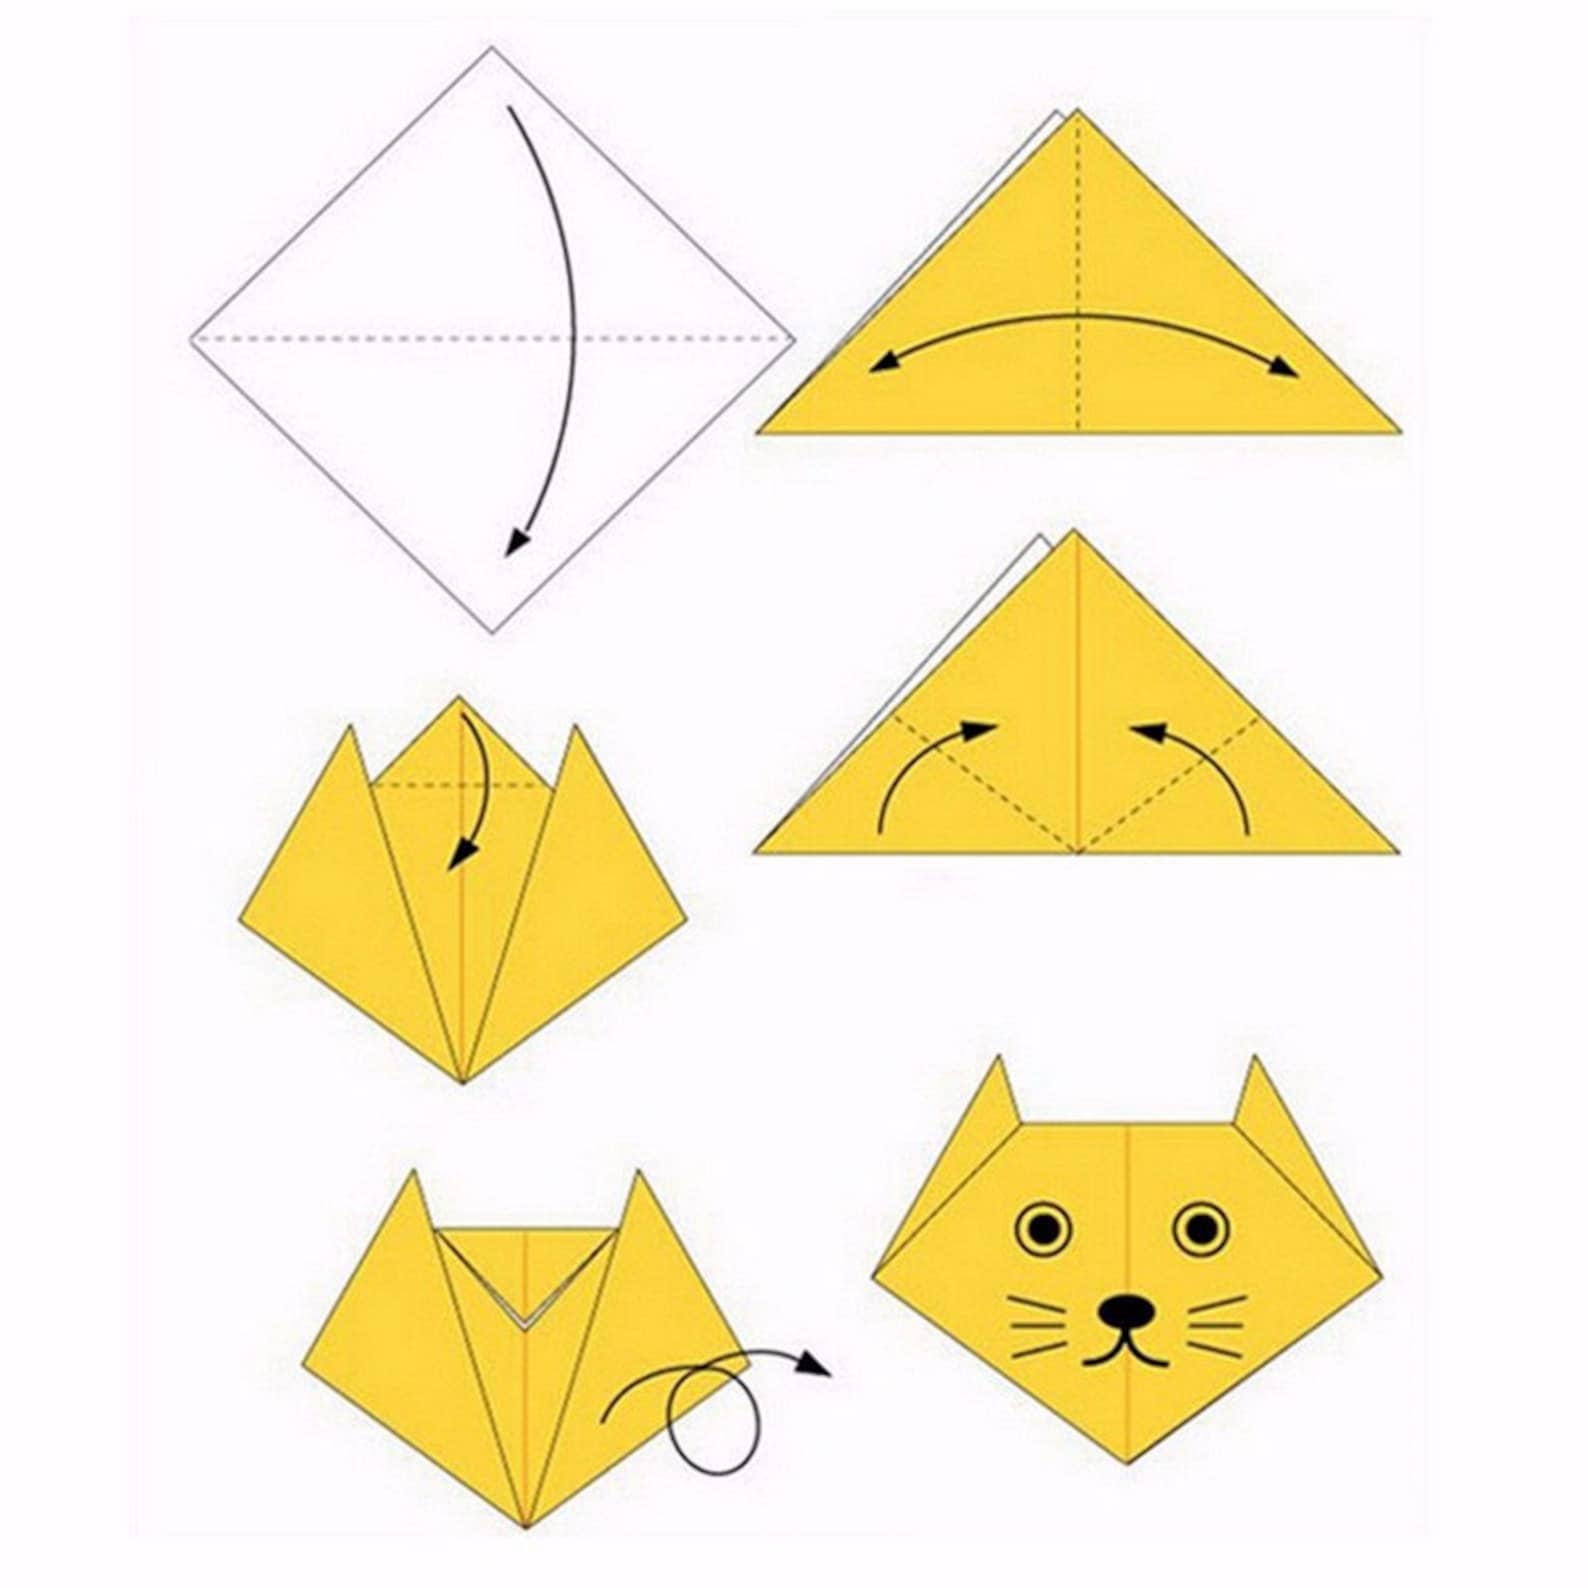 Складывать из бумаги. Как сделать модельку из бумаги а 4. Простое оригами из бумаги для начинающих. Оригами из бумаги для начинающих пошагово. Поделки оригами из бумаги своими руками для начинающих пошагово.